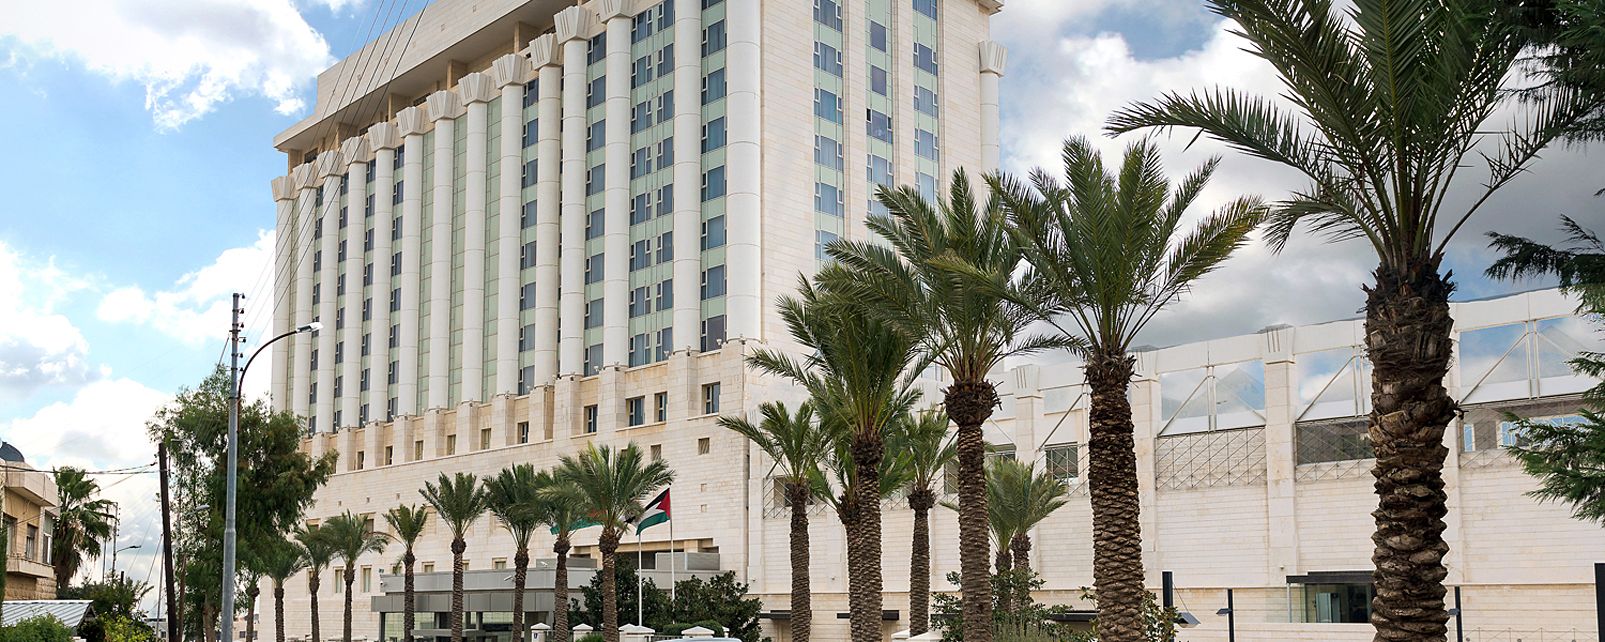 Hotel Four Seasons Amman